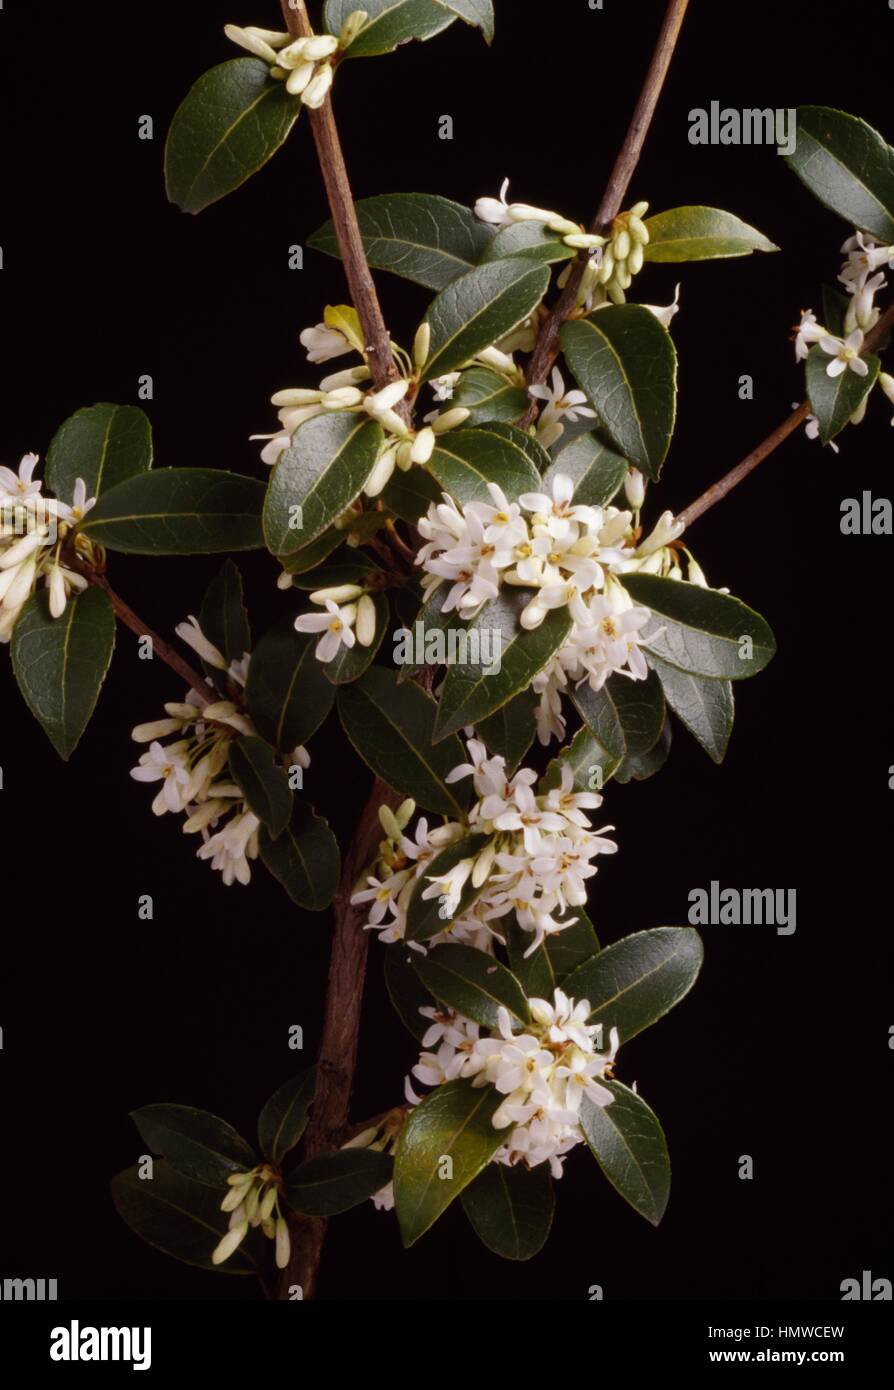 Osmanthus (Osmanthus delavayi), Oleaceae. Stock Photo